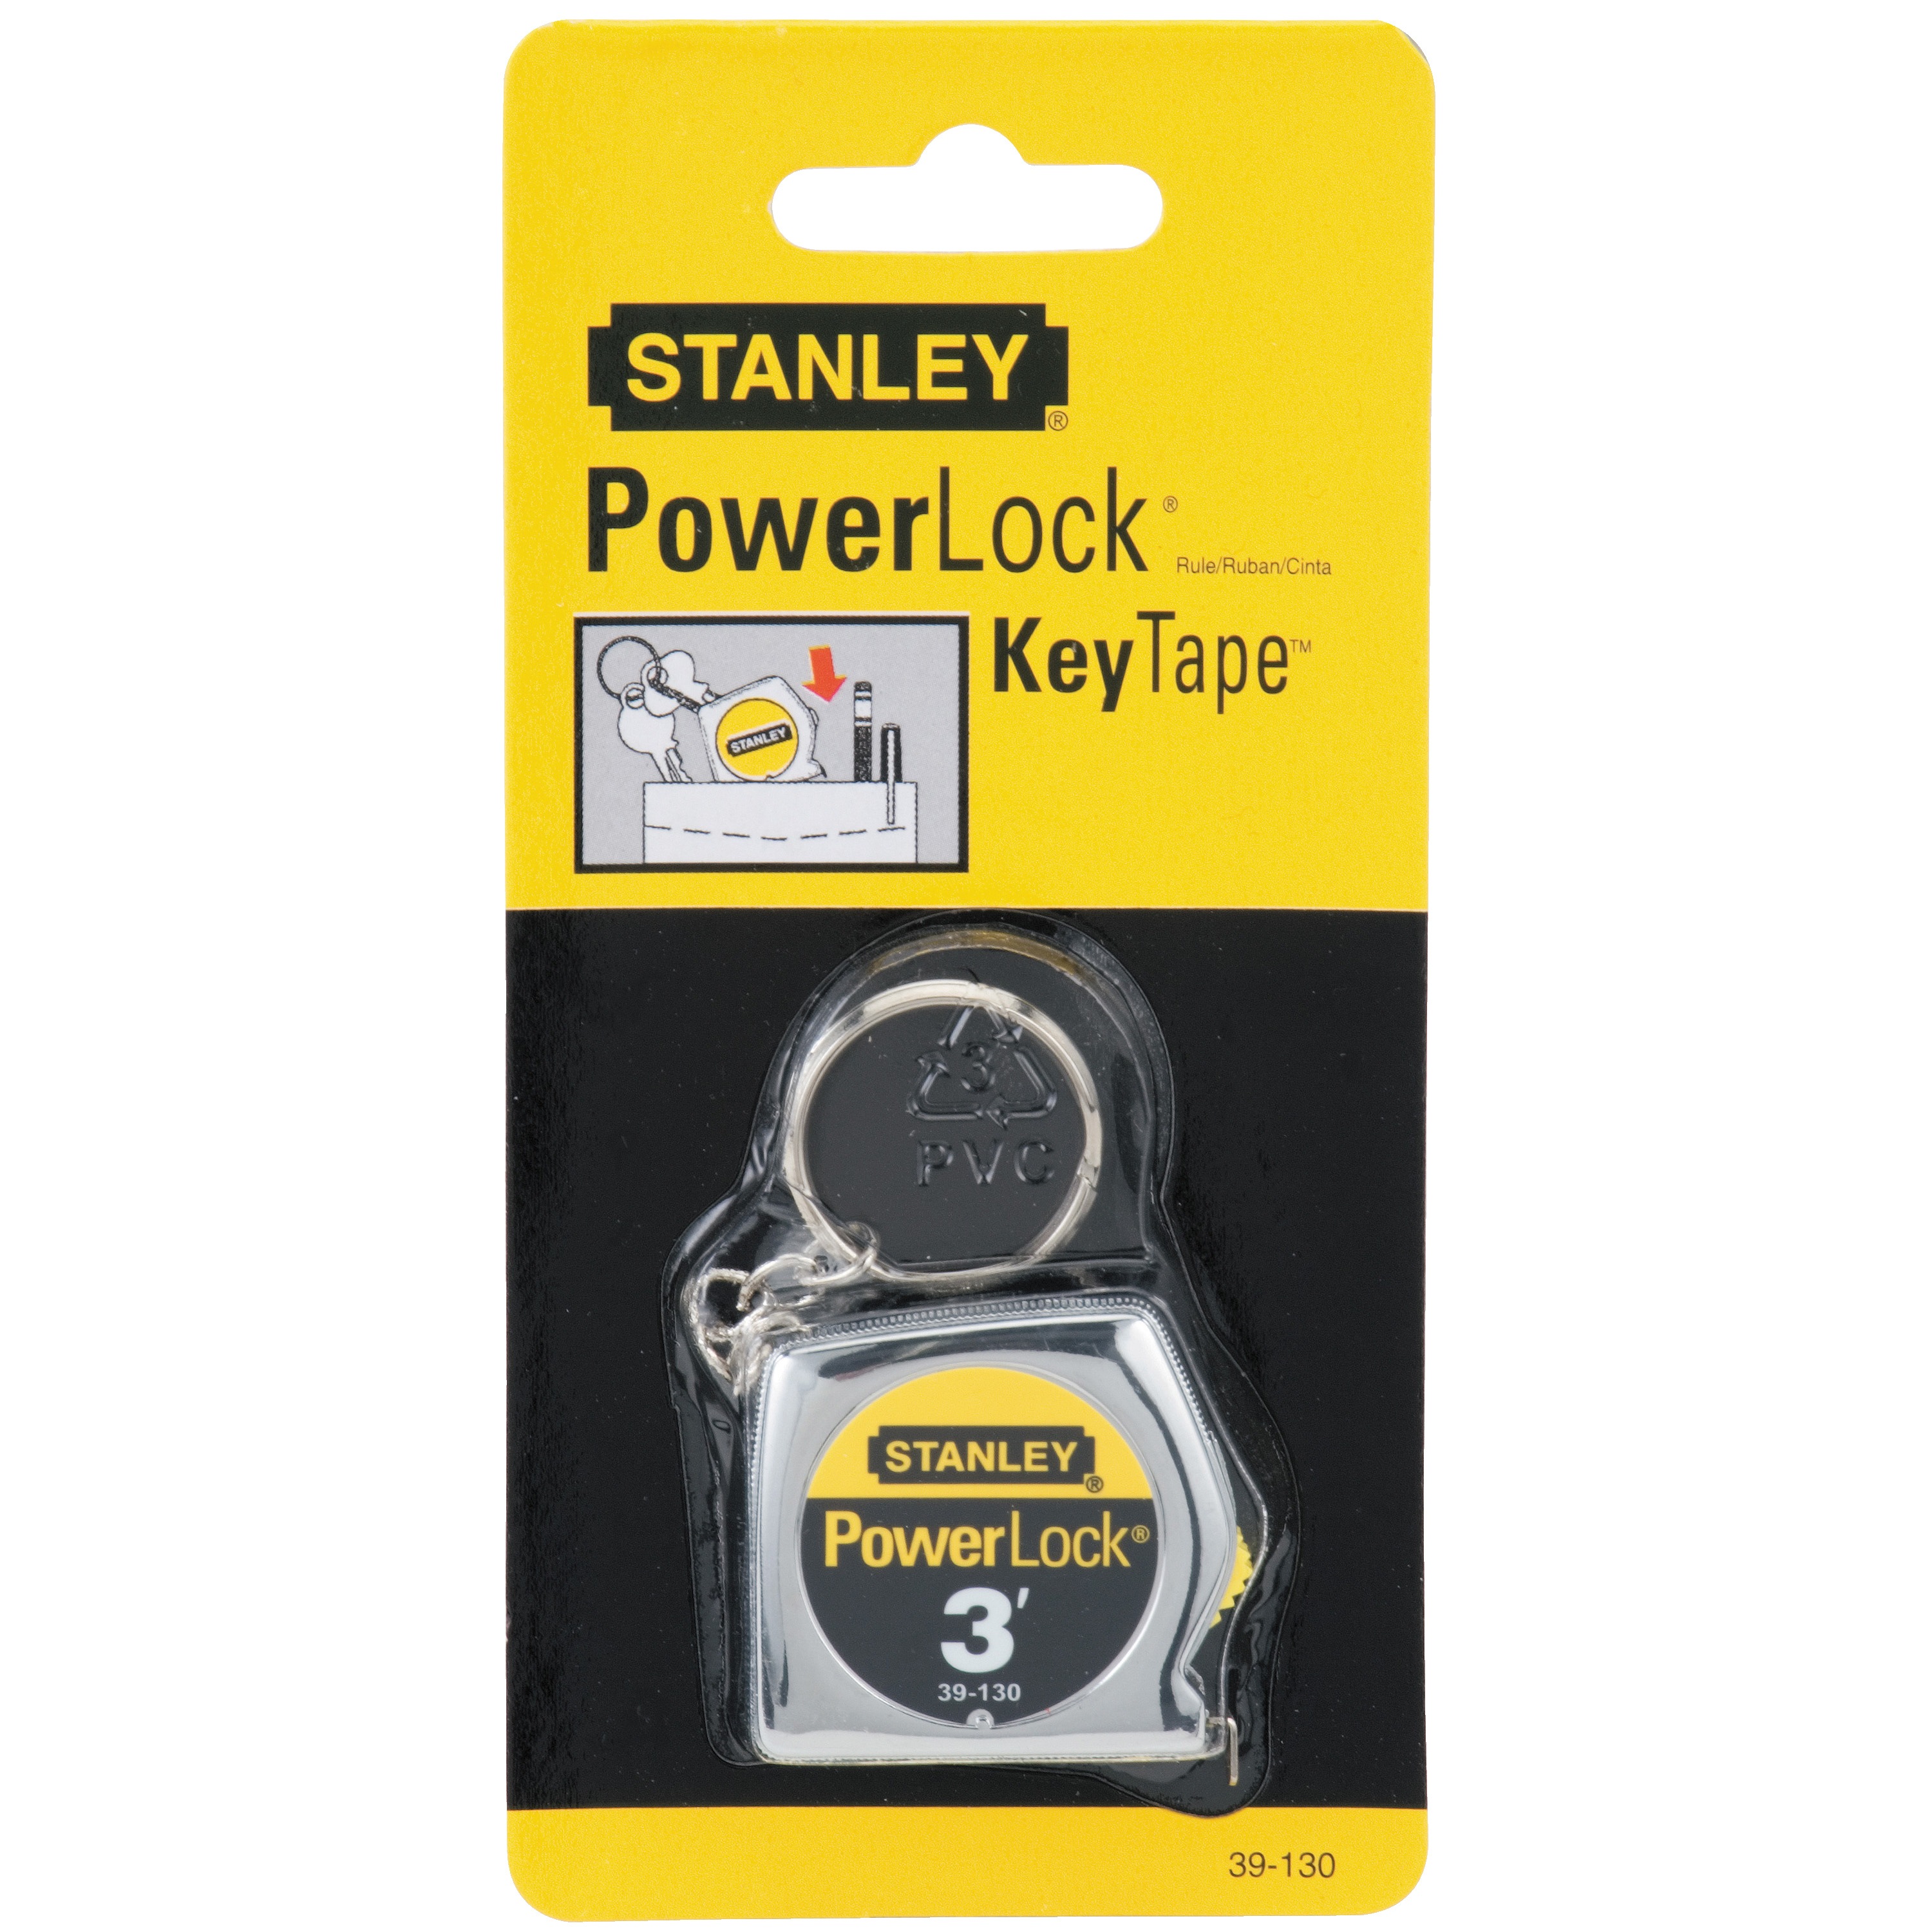 Stanley Tools - 3 ft PowerLock Key Tape Measure - 39-130